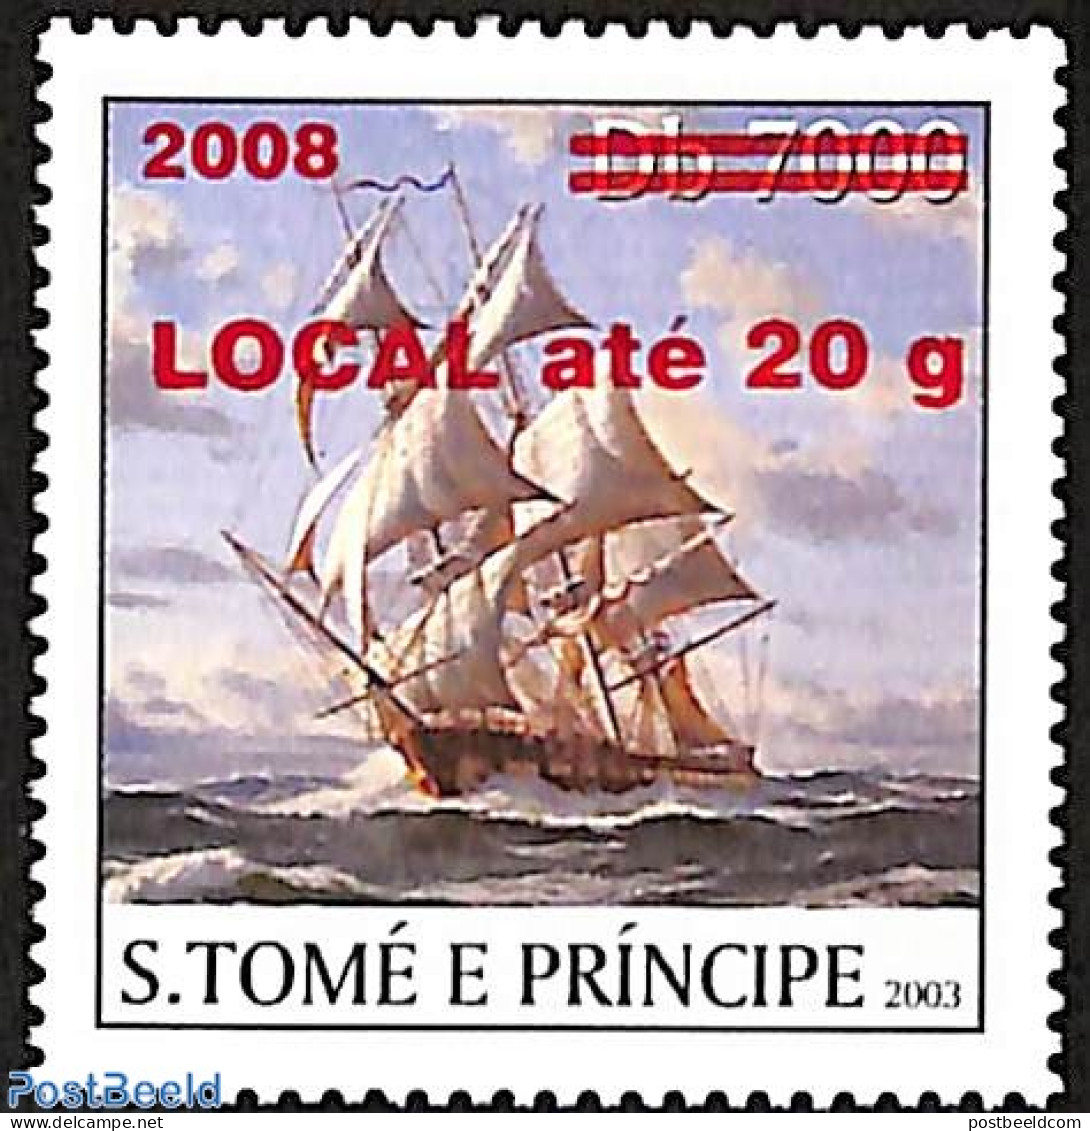 Sao Tome/Principe 2008 Ship, Overprint, Mint NH, Nature - Transport - Water, Dams & Falls - Ships And Boats - Ships